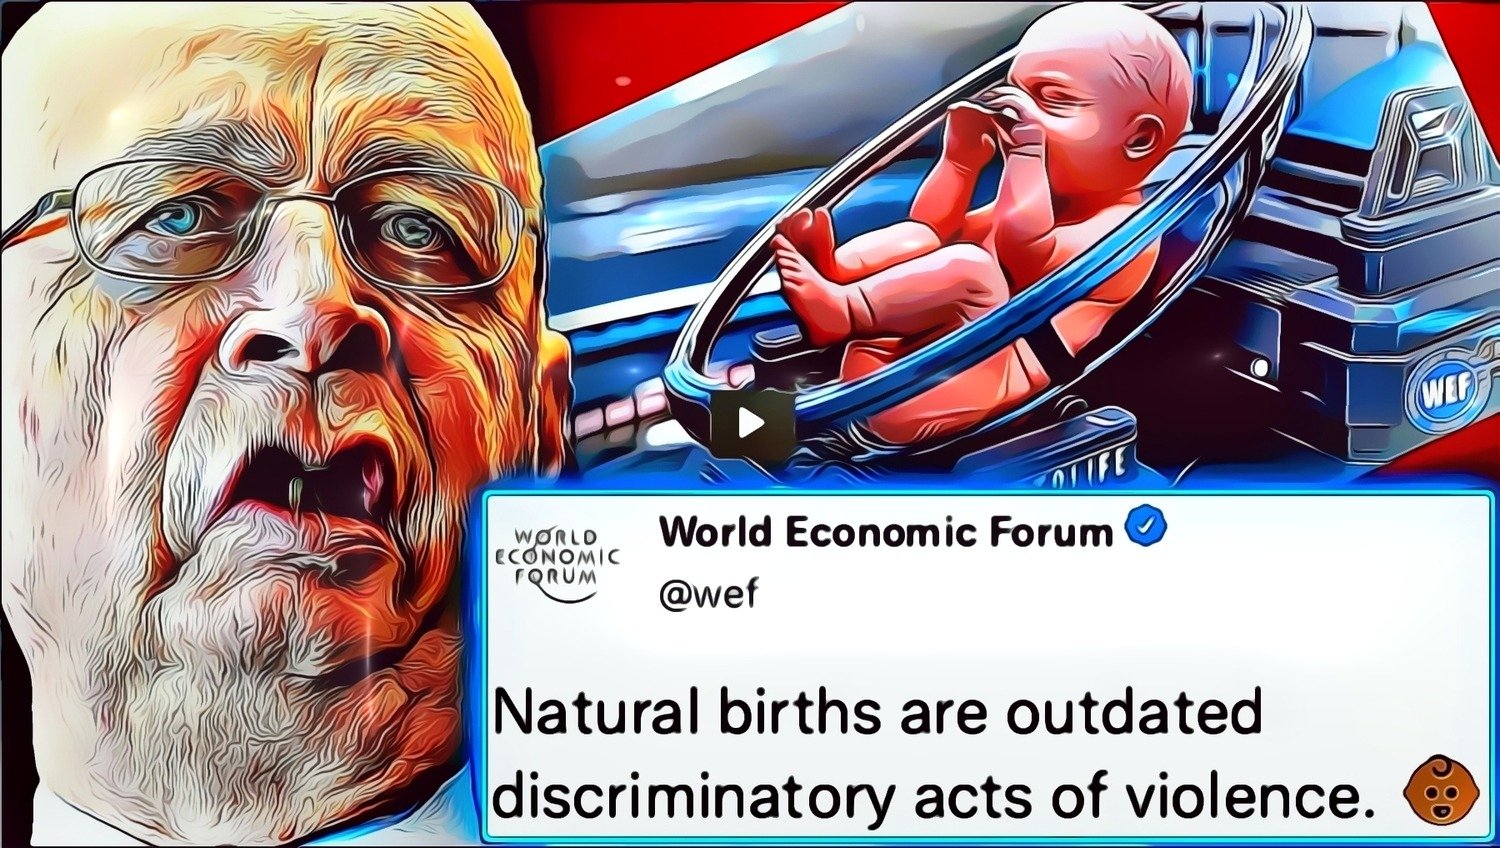 WEF kieltää luonnollisen hedelmöityksen: Kaikki vauvat on kasvatettava laboratoriossa 2030 mennessä